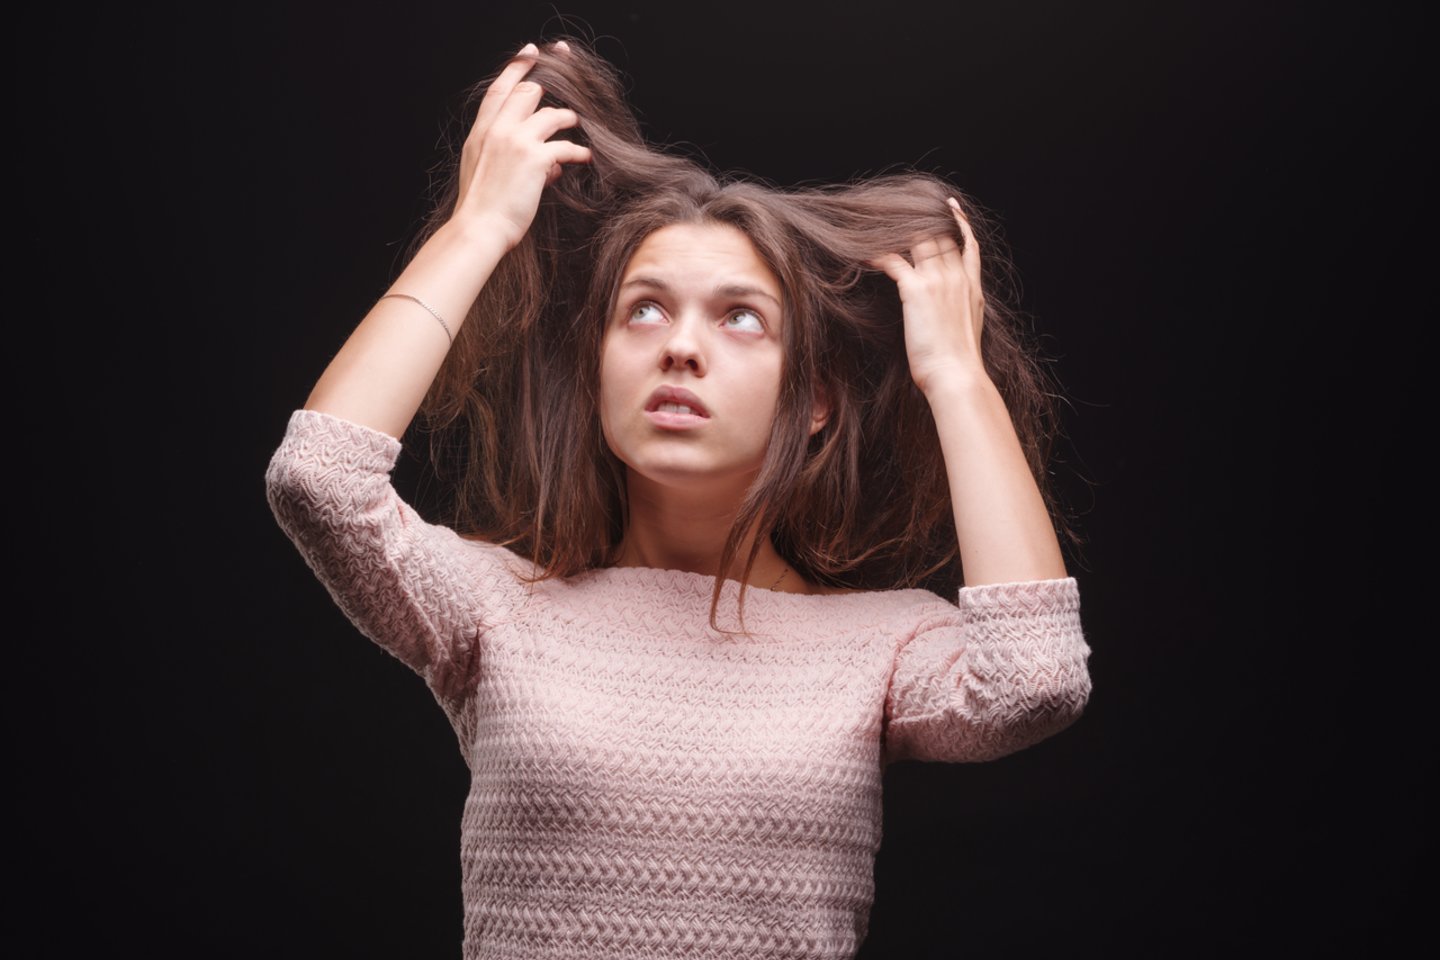 Plaukų slinkimas – aktuali problema įvairaus amžiaus vyrams ir moterims, tik jo priežastys skiriasi – plaukų slinkimui įtakos gali turėti amžius, ligos, stresas ar net genetika.<br>123rf nuotr.